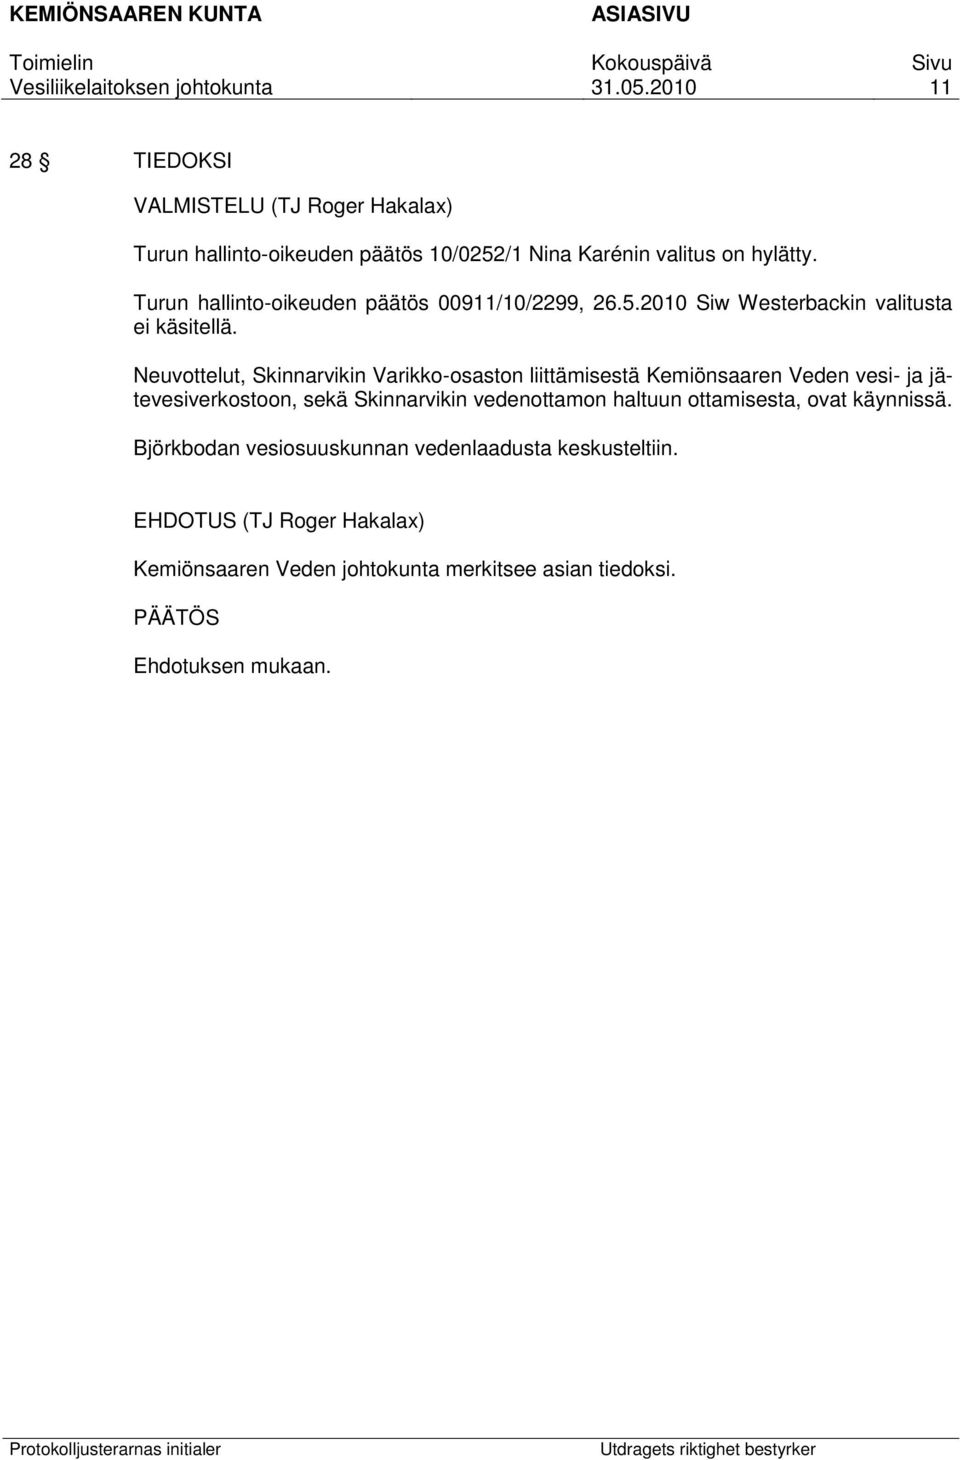 Neuvottelut, Skinnarvikin Varikko-osaston liittämisestä Kemiönsaaren Veden vesi- ja jätevesiverkostoon, sekä Skinnarvikin